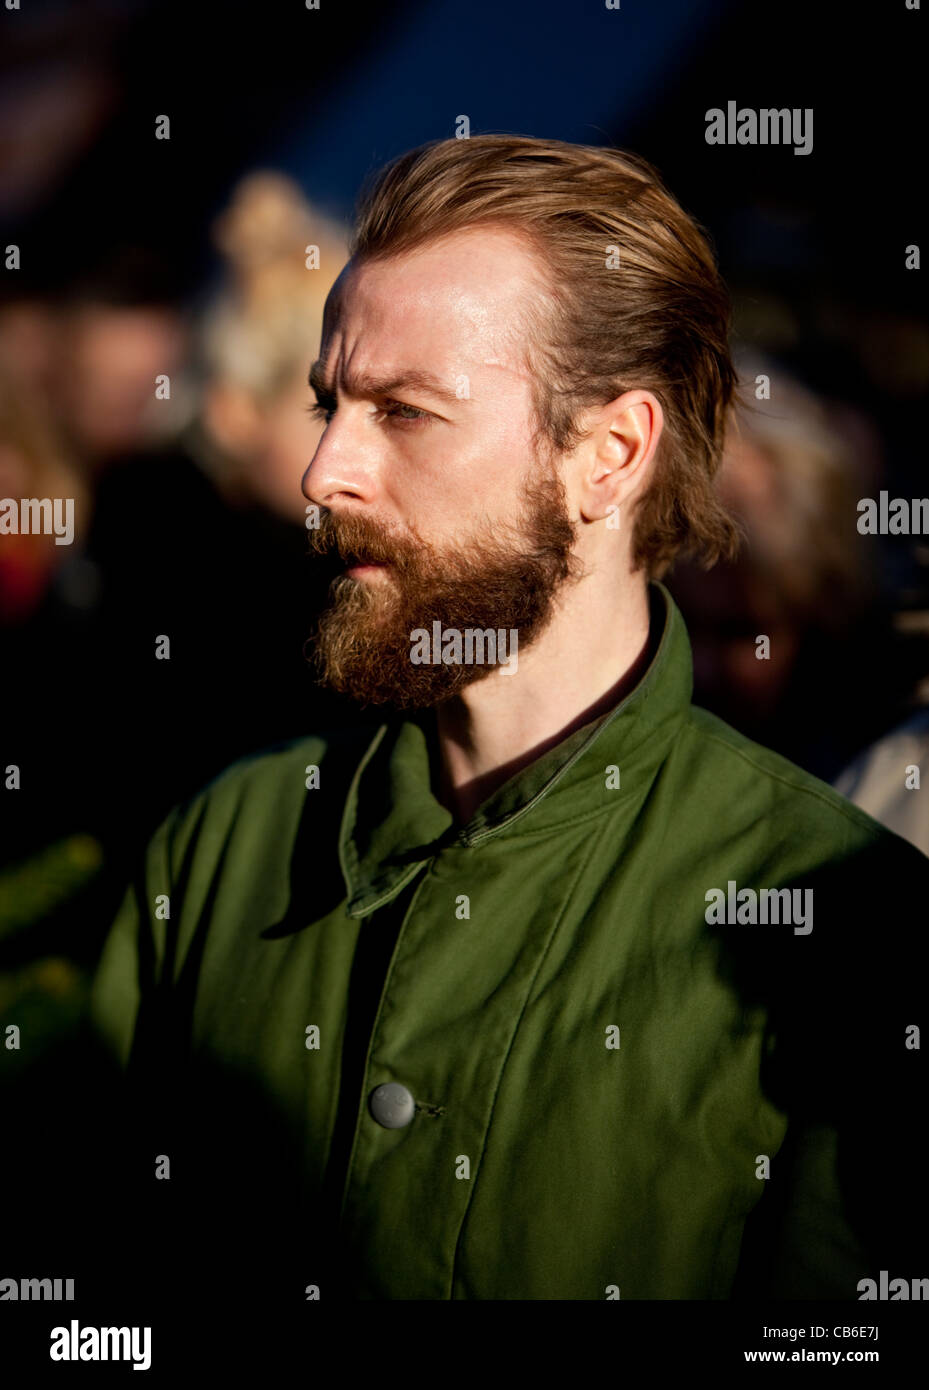 Ritratto di testa di un uomo barbuto che si trova nella folla che guarda fuori, Londra, Inghilterra, Regno Unito. Foto Stock